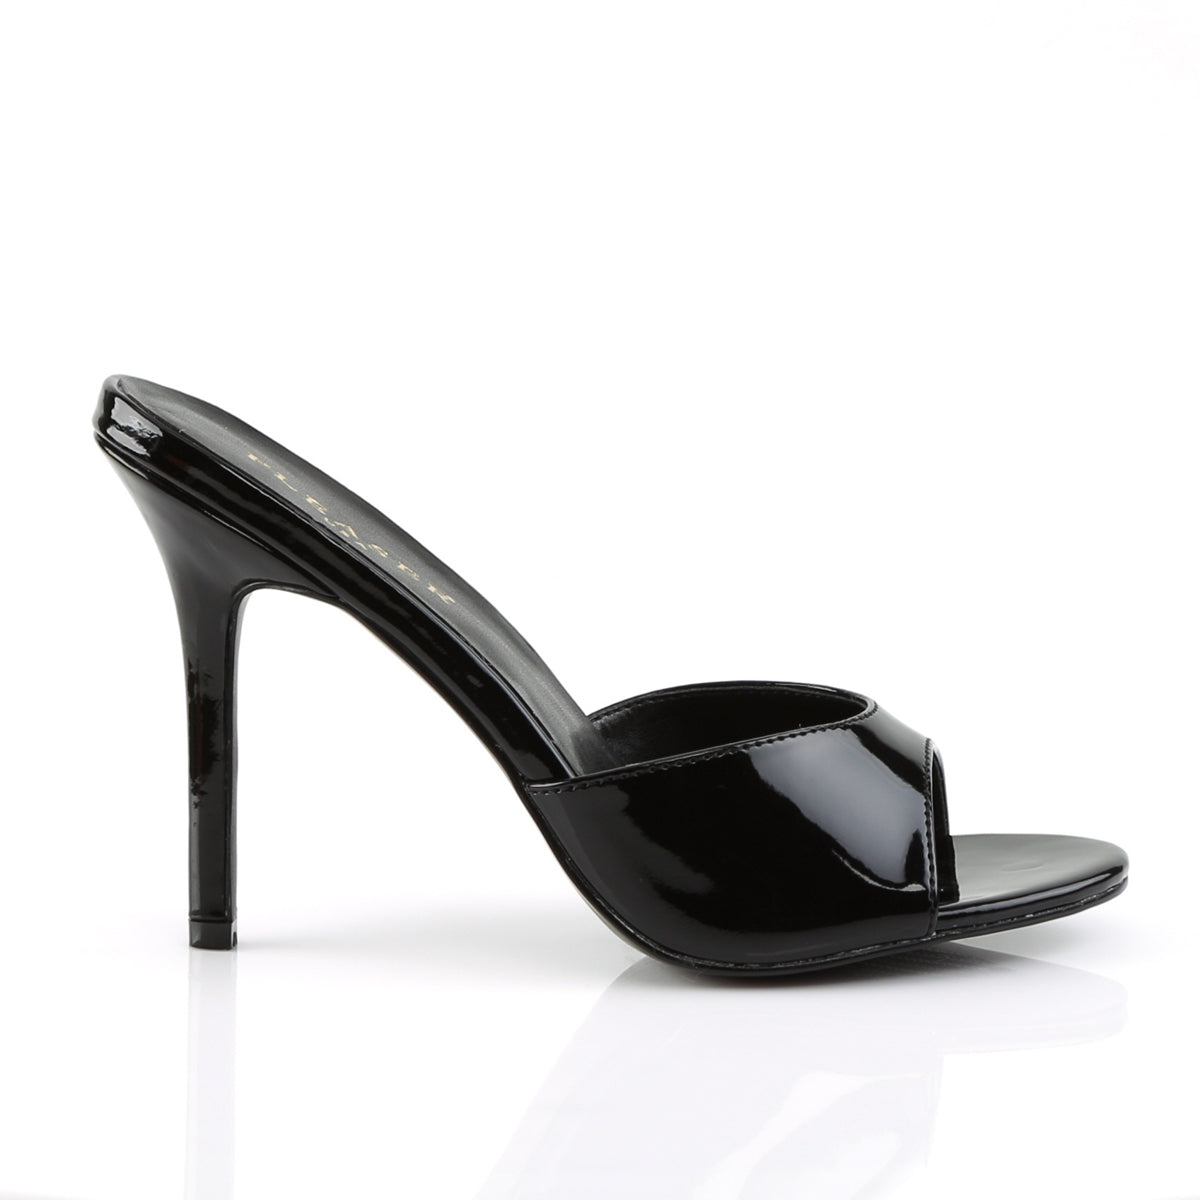 CLASSIQUE-01 Pleaser Black Patent Single Sole Shoes [Fetish Shoes]